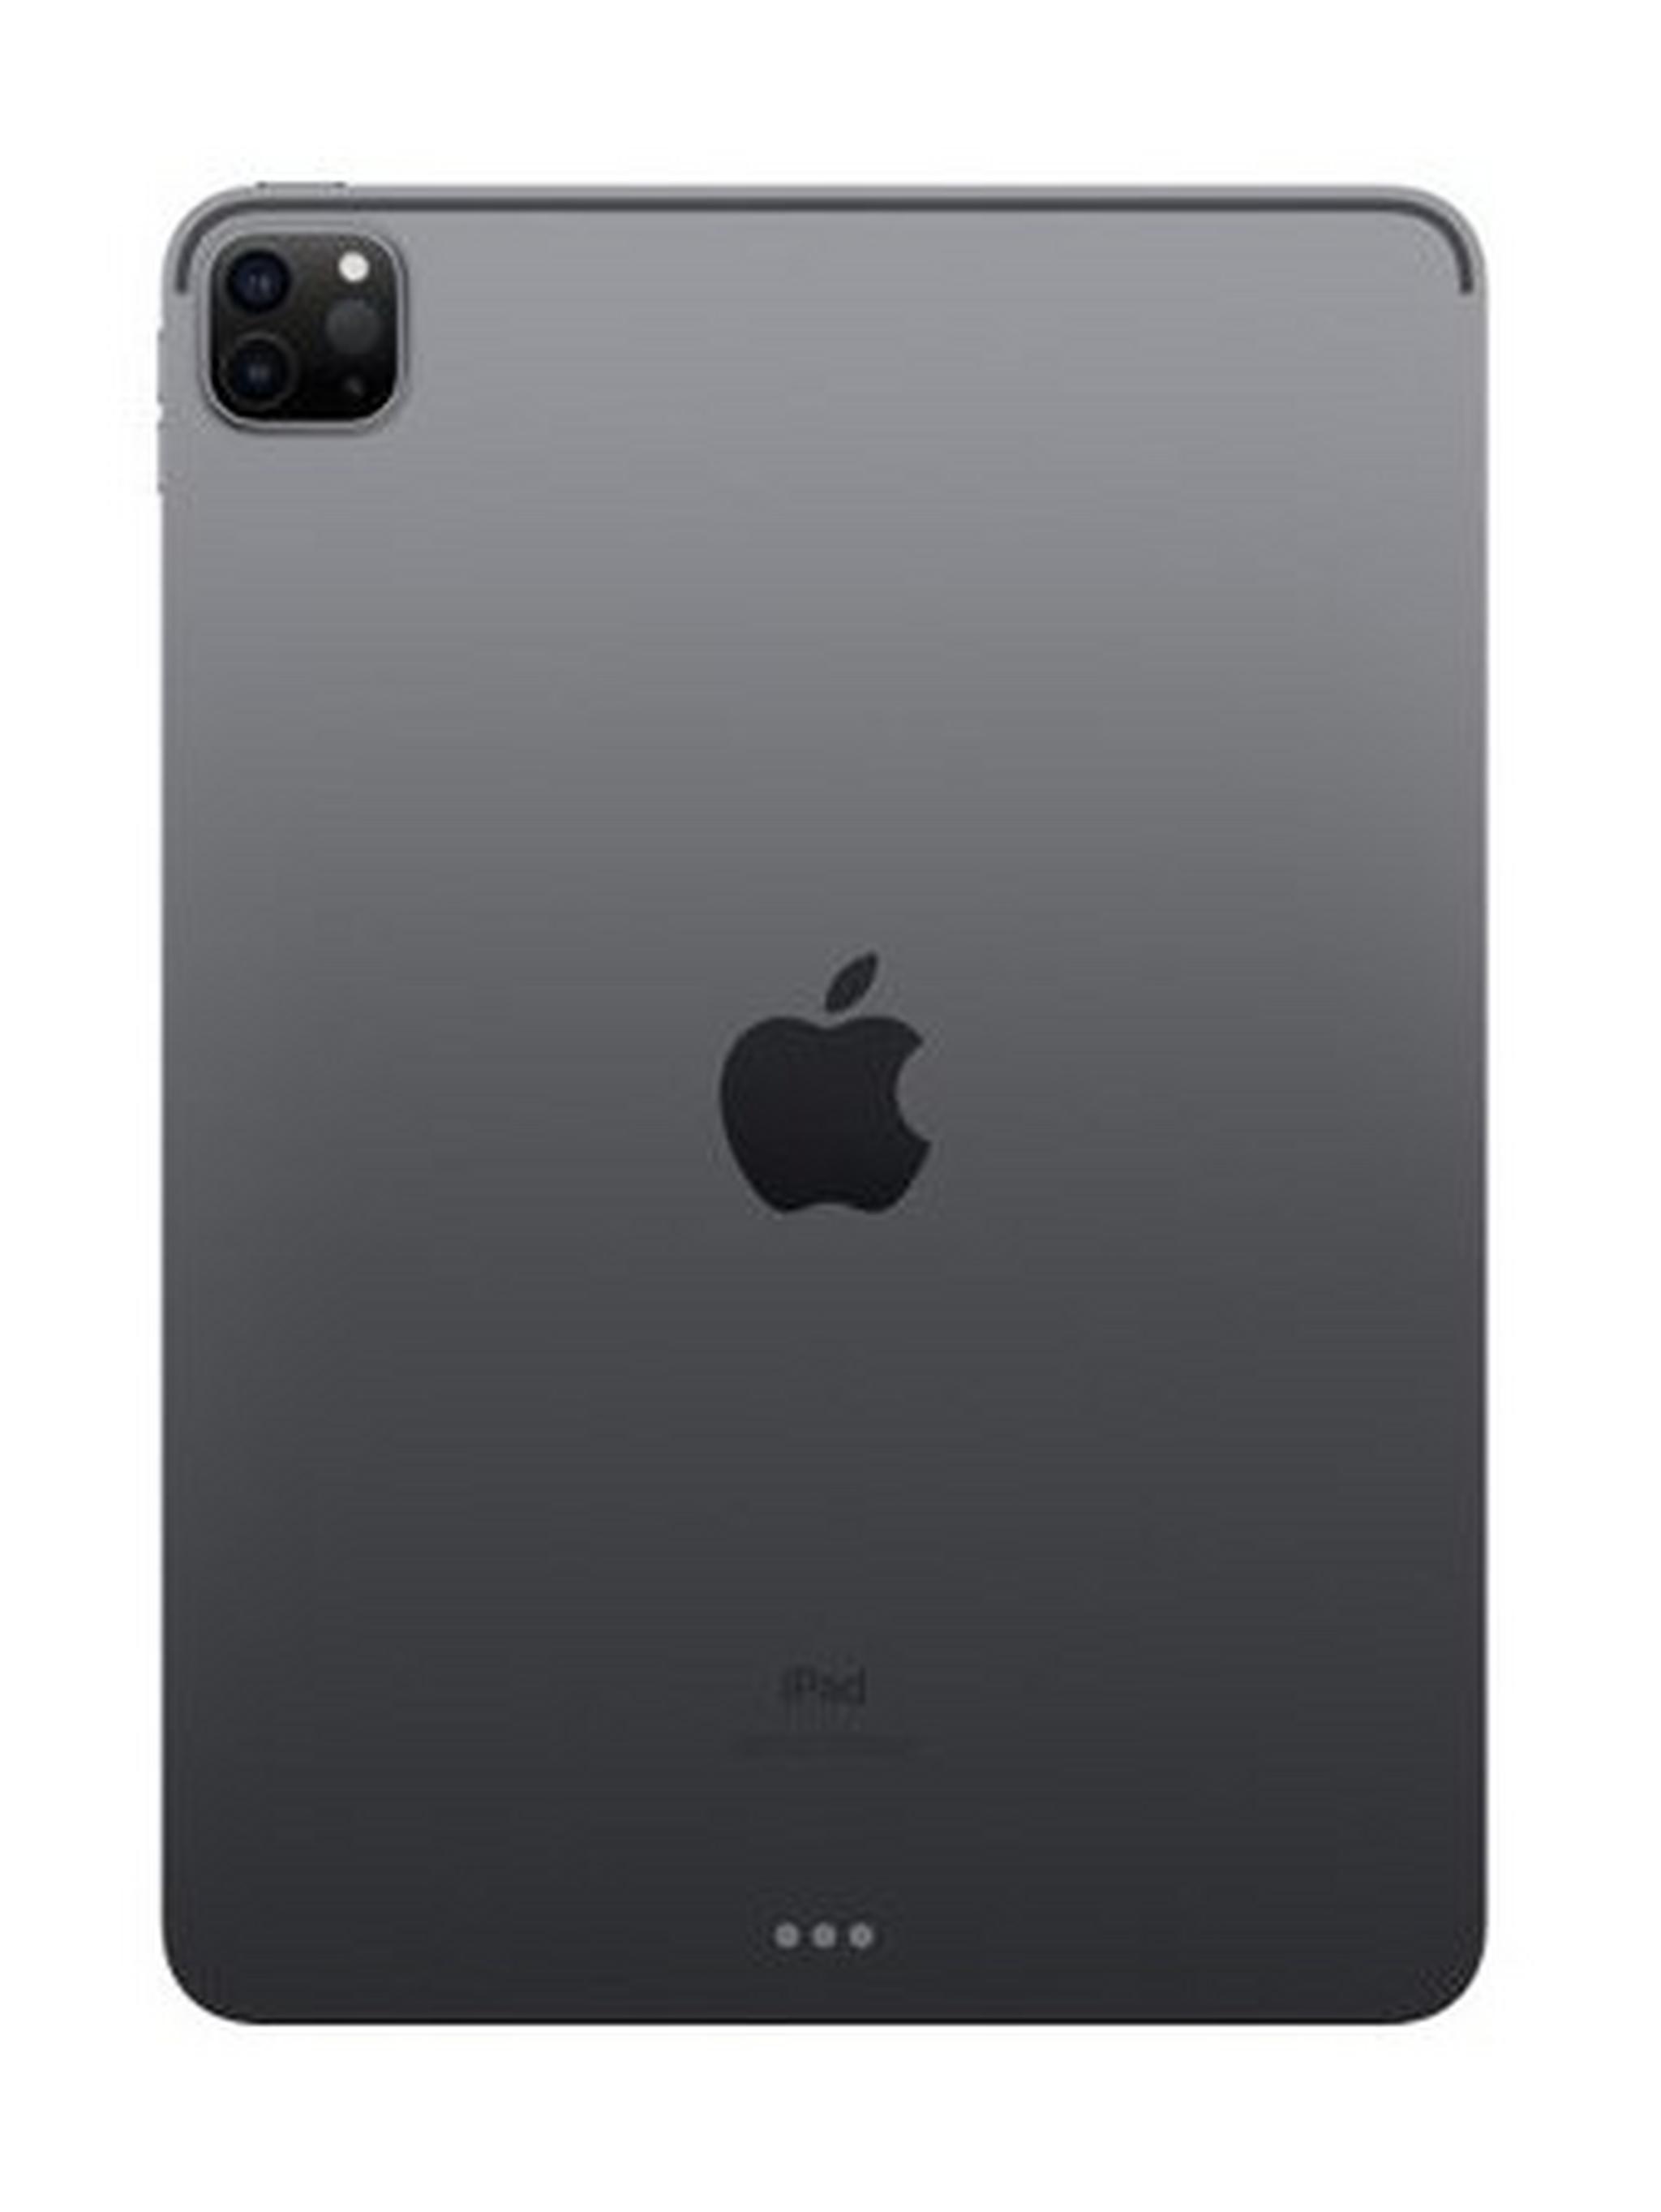 Apple IPad Pro (2020) 11-inch 512GB WiFi – Space Grey